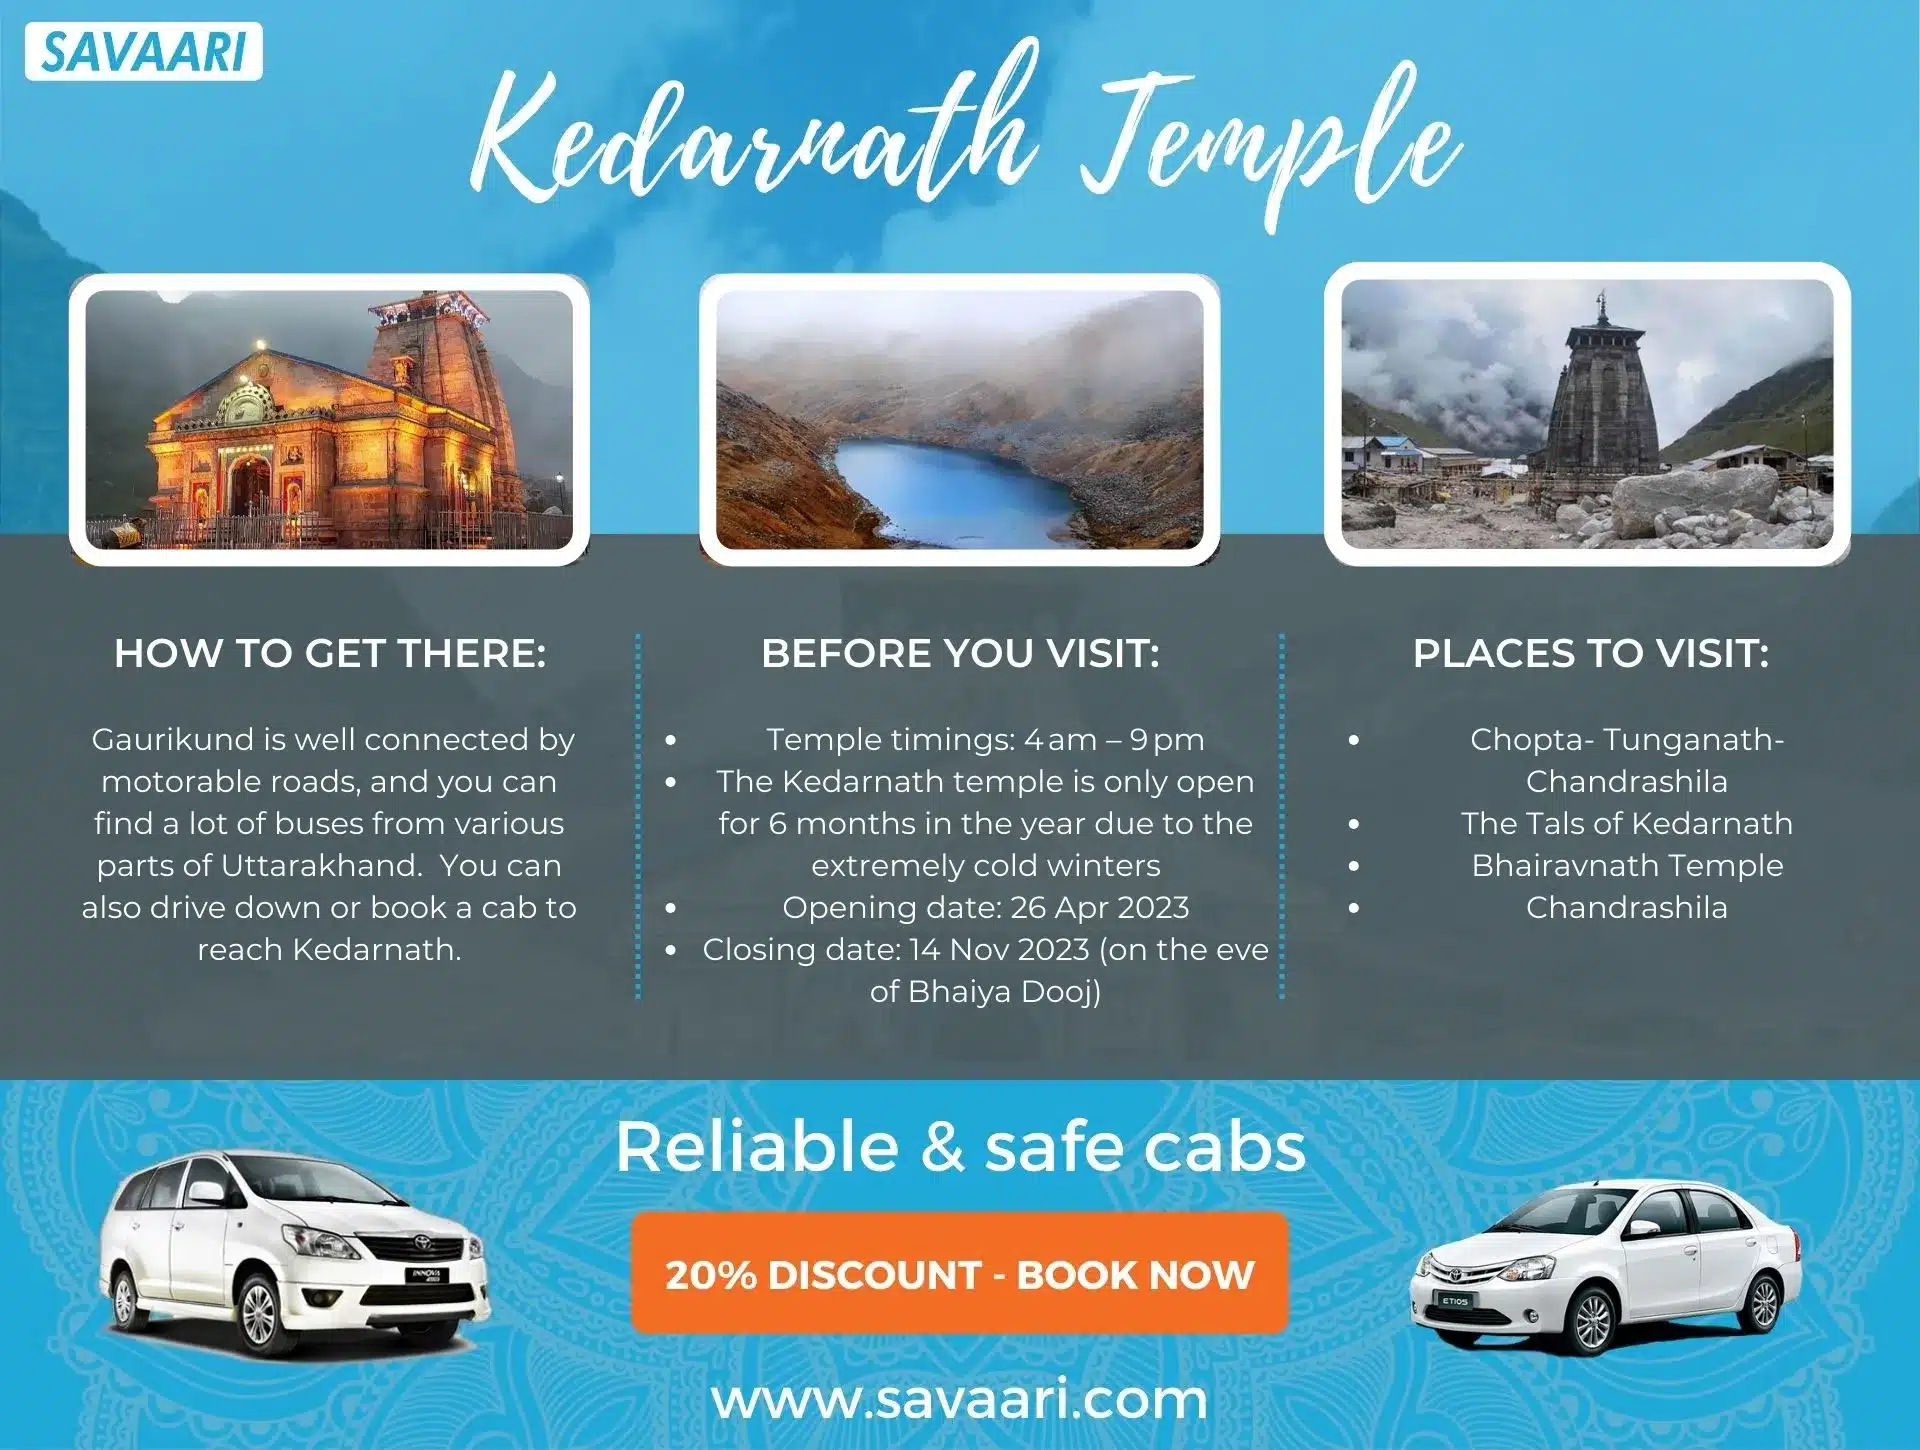 Things to do Kedarnath Temple